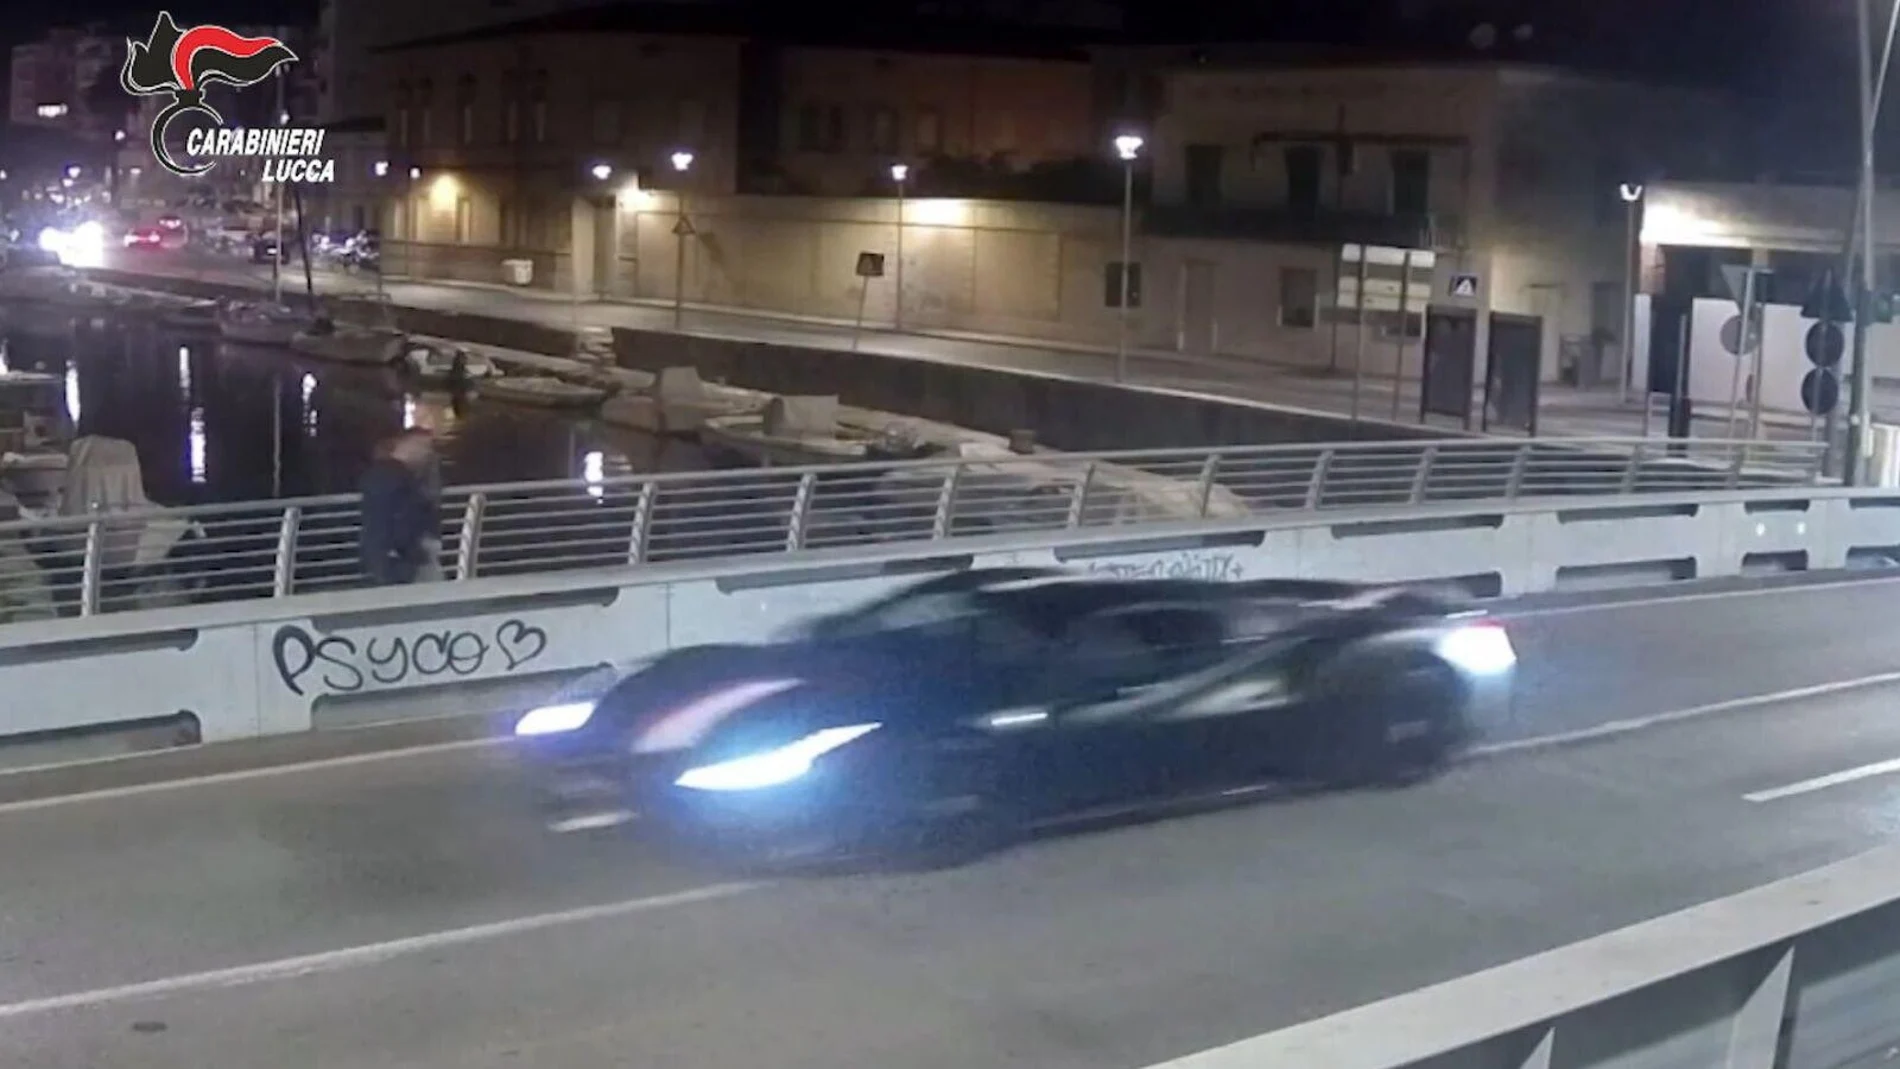 Leclerc persiguiendo con su Ferrari a los ladrones